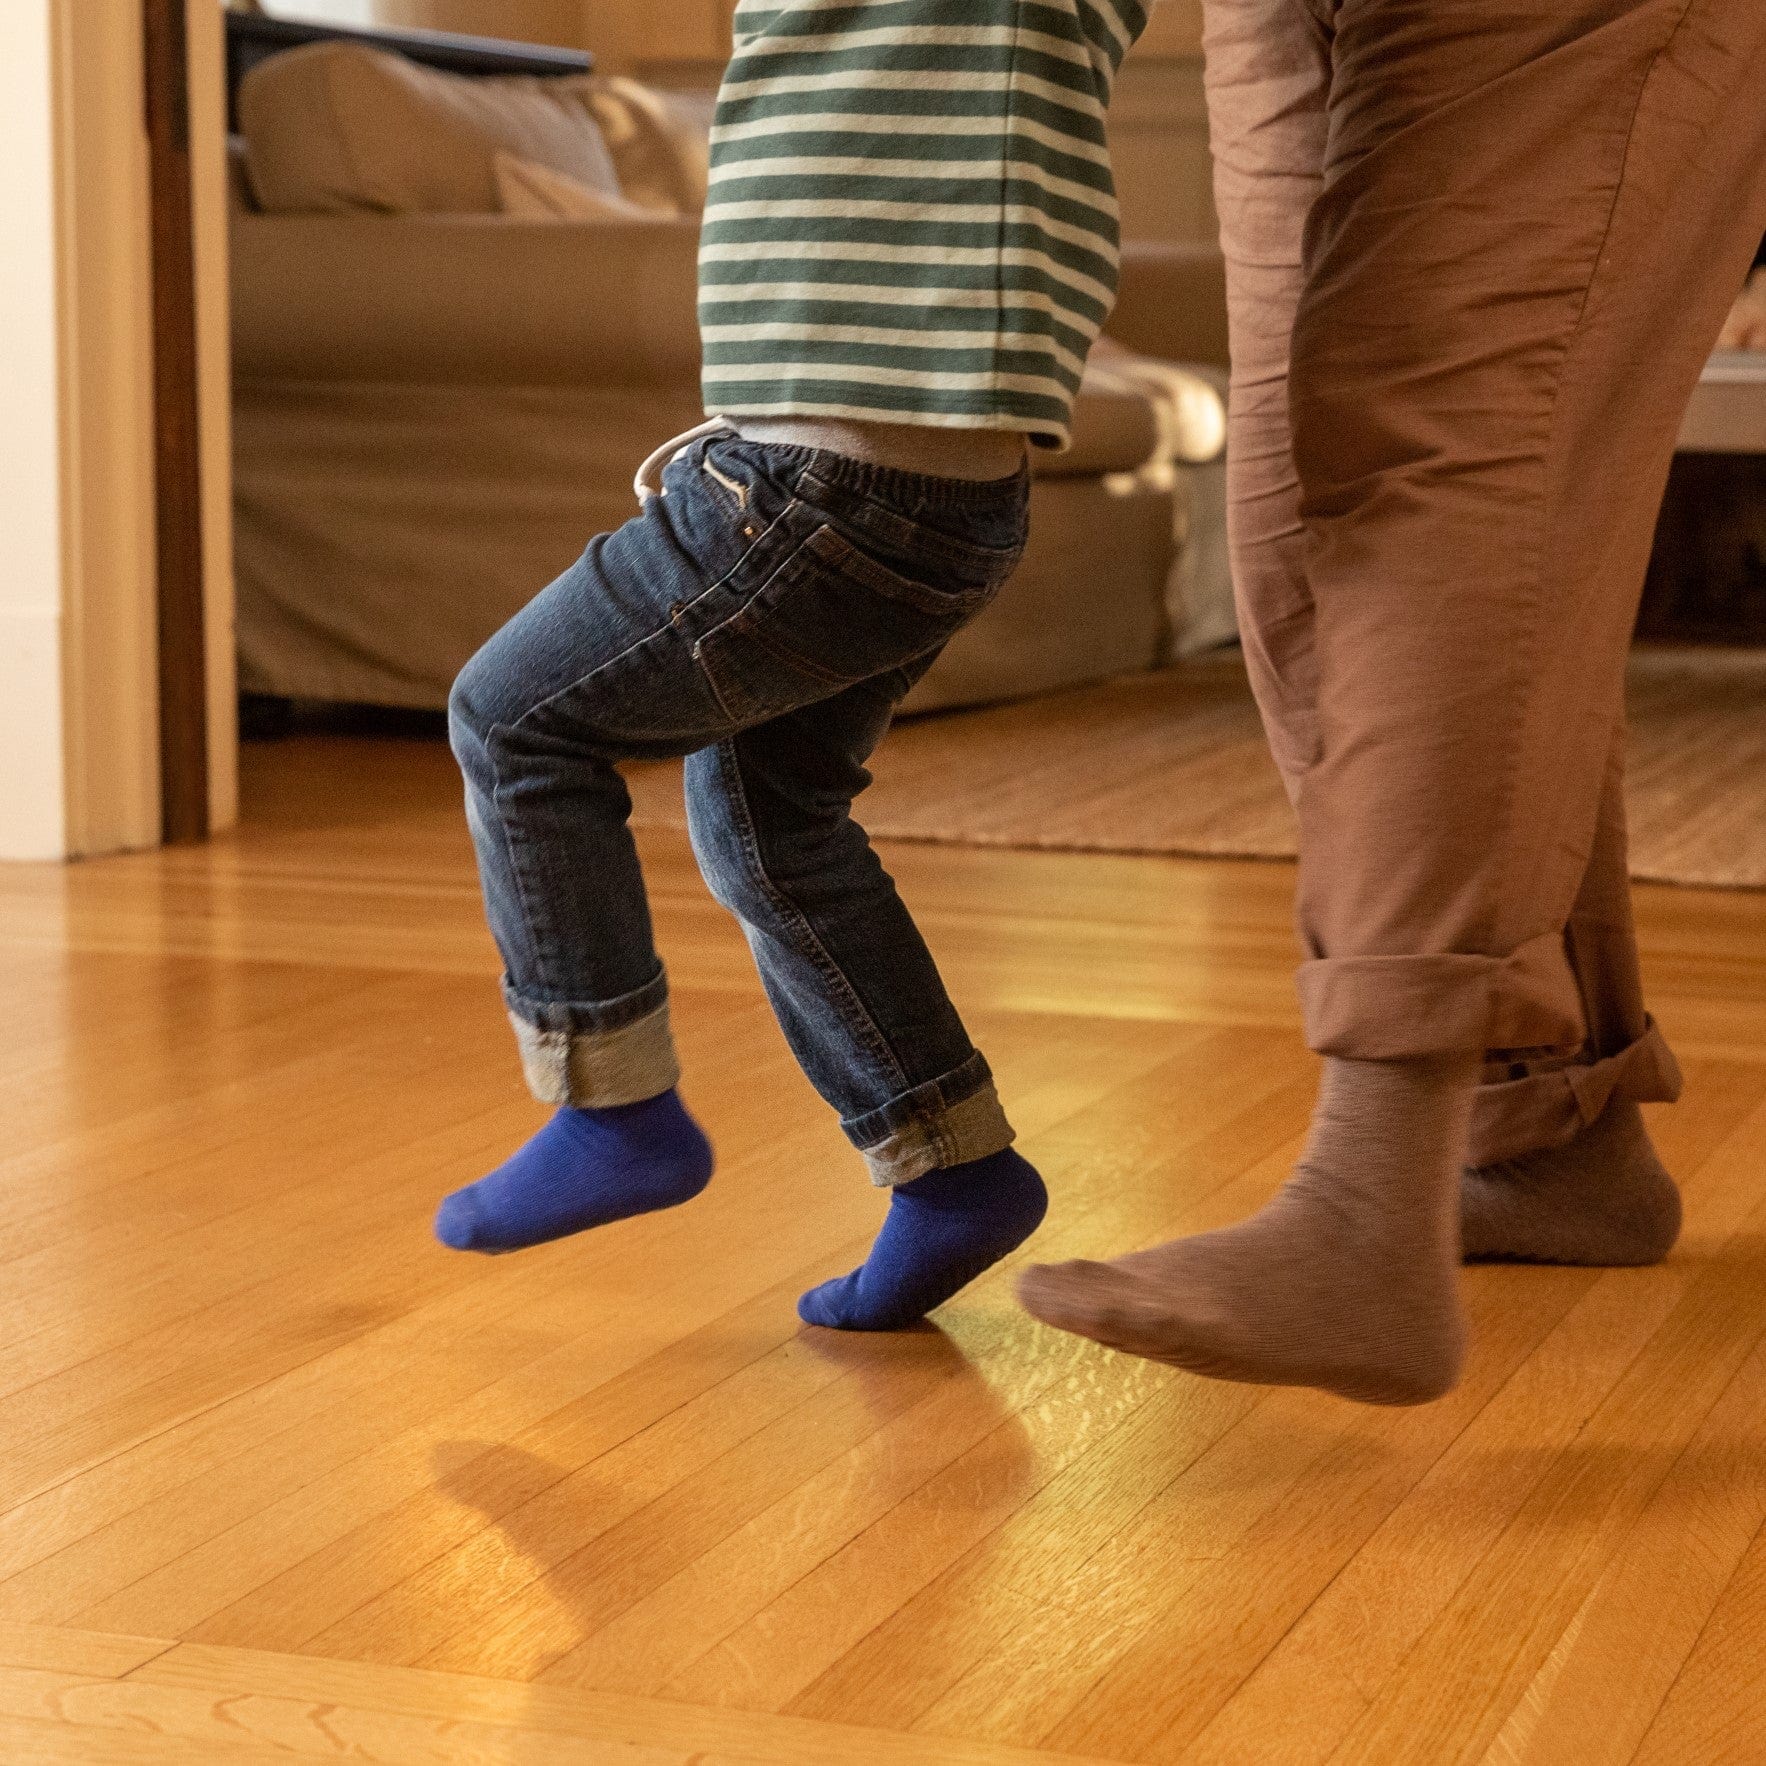 Blue/Black/Grey Grip Socks for Toddlers & Kids - 4 pairs - Gripjoy Socks